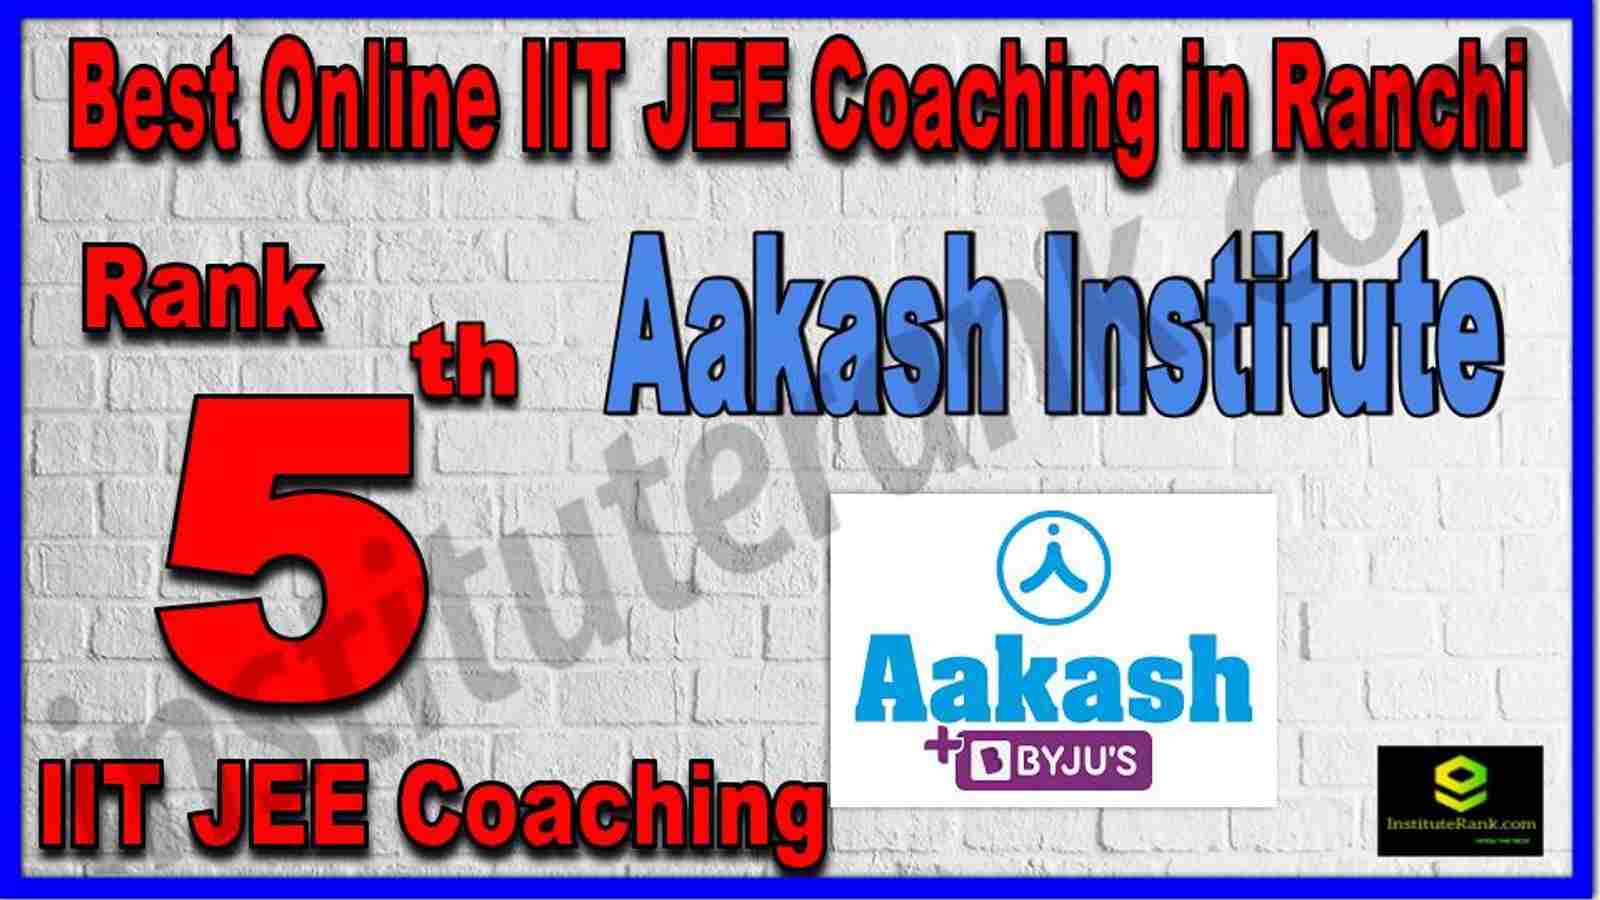 Rank 5th Best Online IIT JEE Coaching in Ranchi